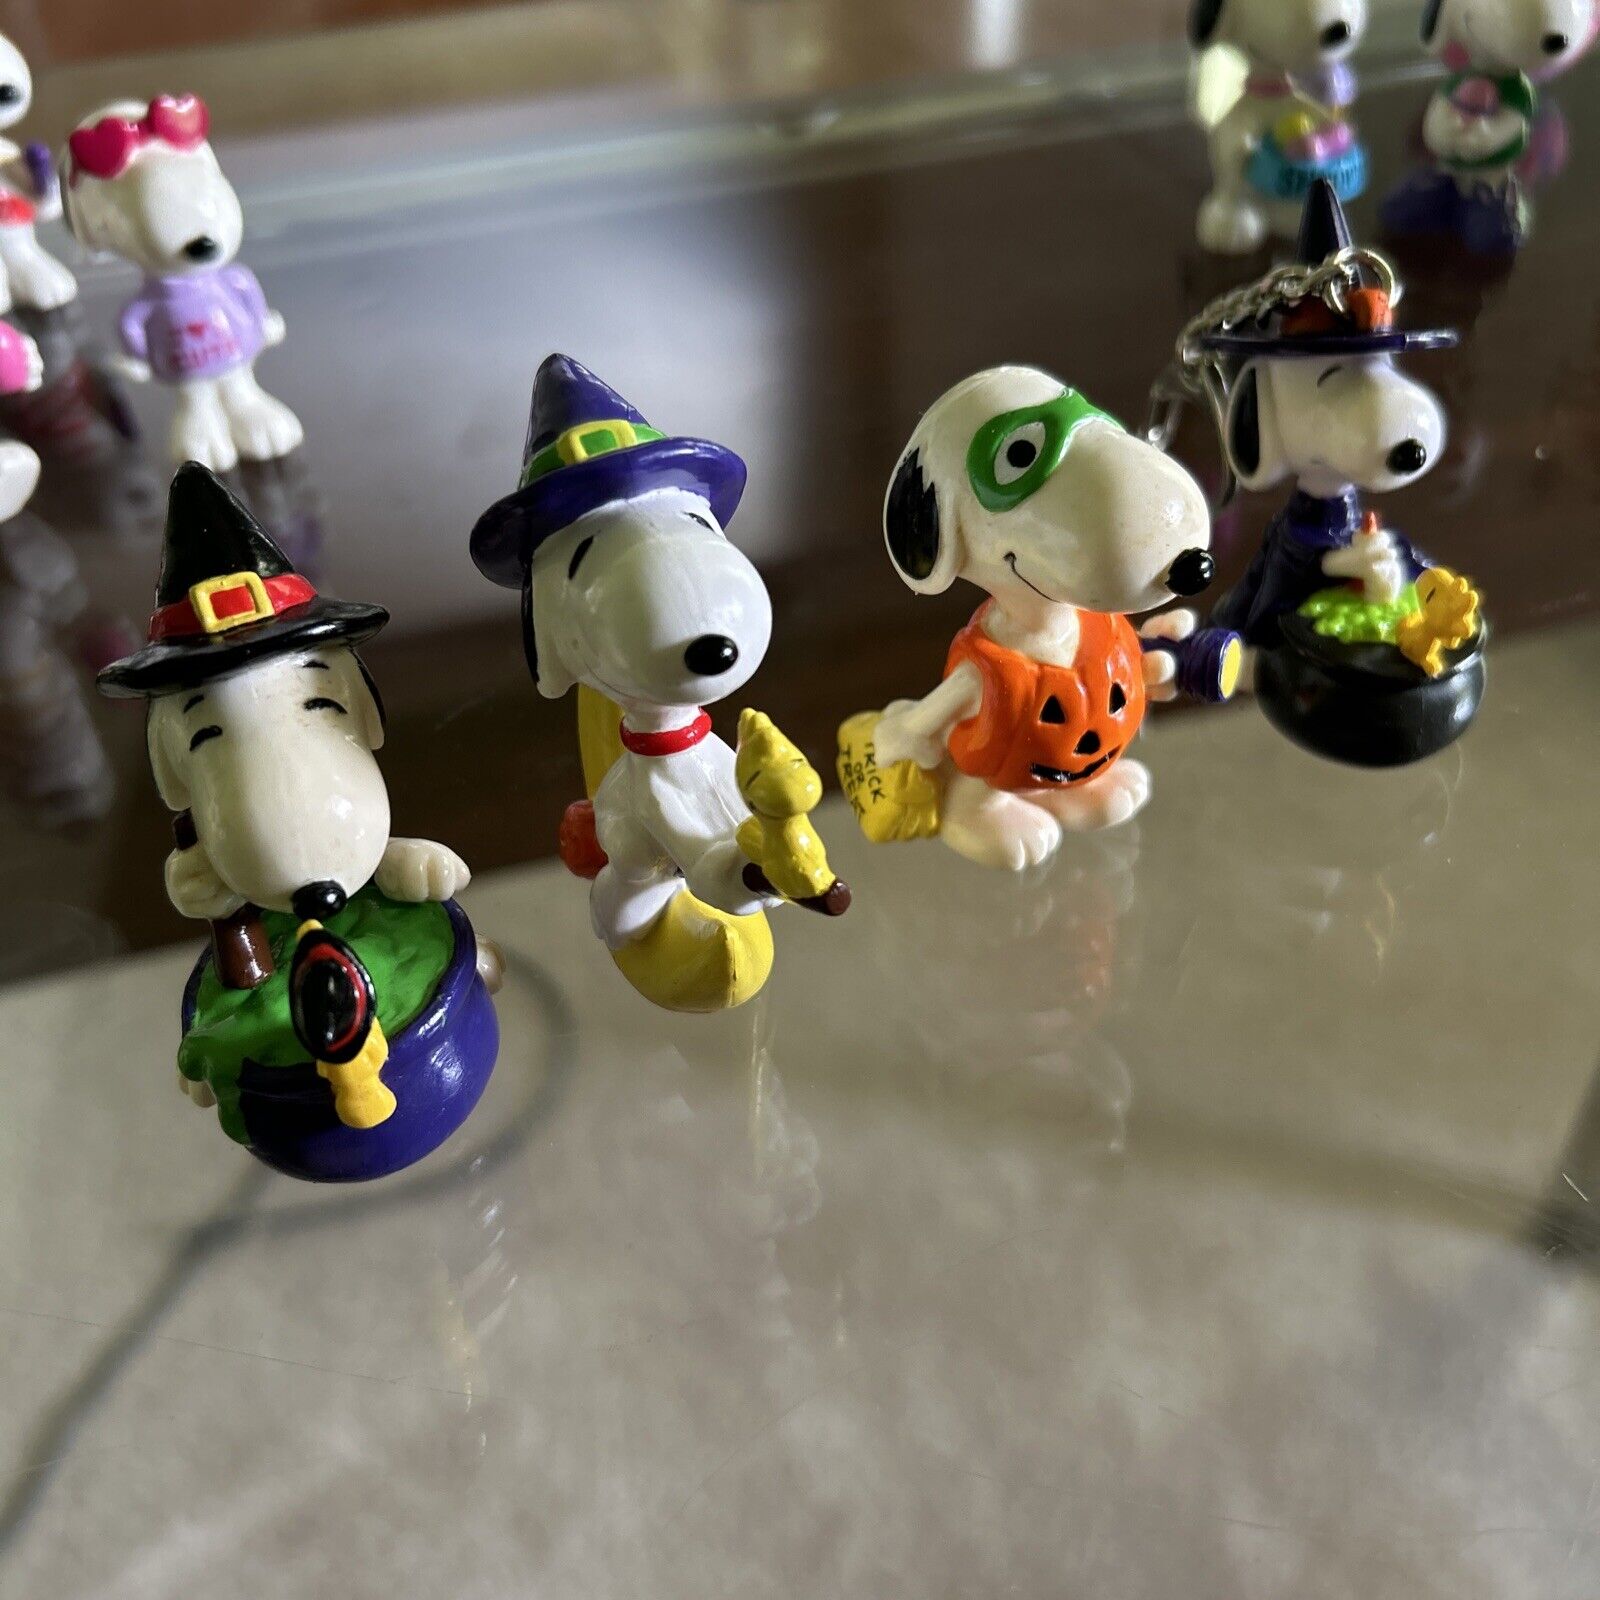 Lot of 4 Vintage Snoopy PVC Halloween Figures Figurines Peanuts